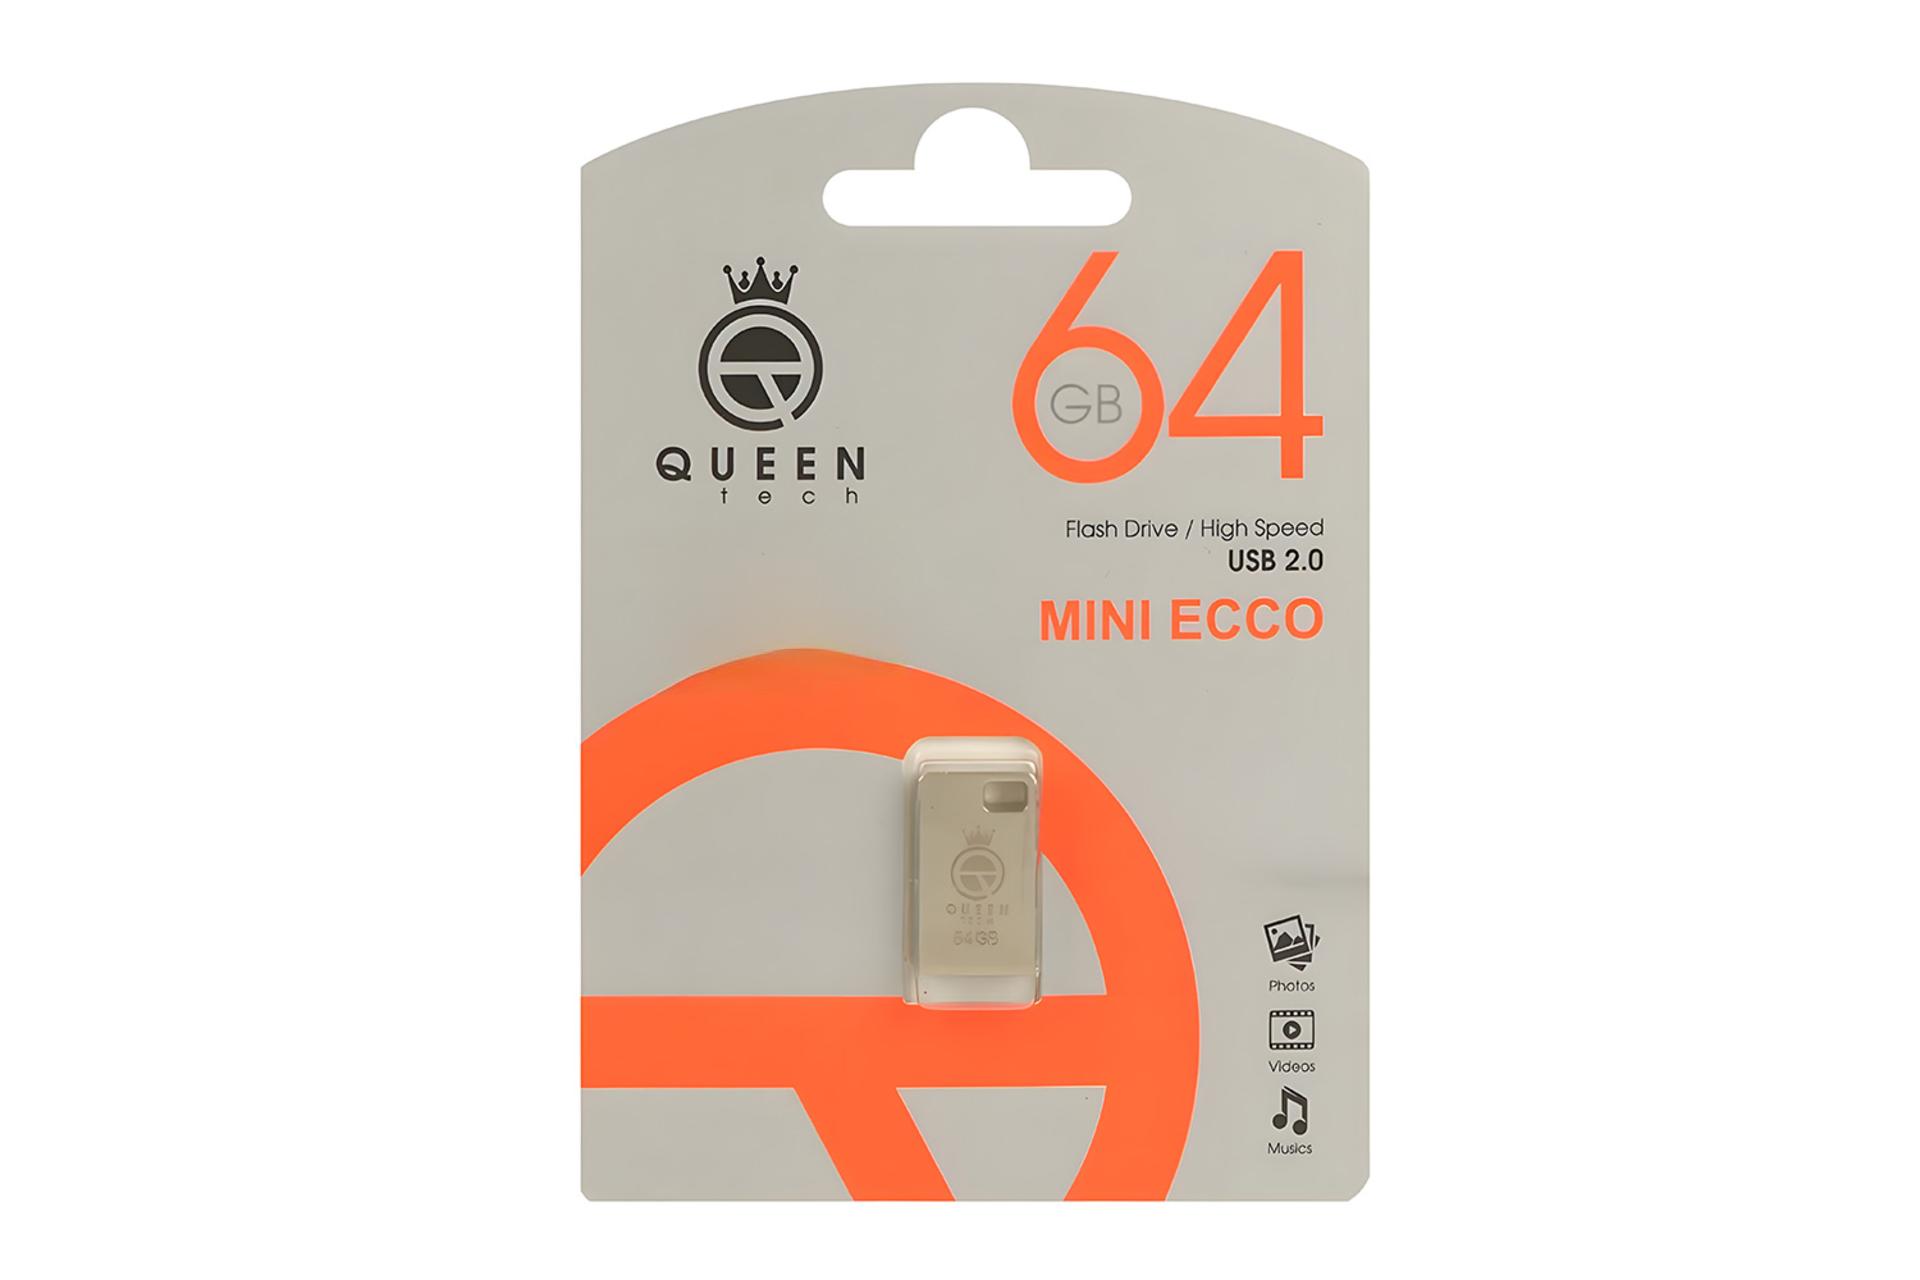 جعبه فلش مموری کوئین تک Queen Tech MINI ECCO 64GB USB 2.0